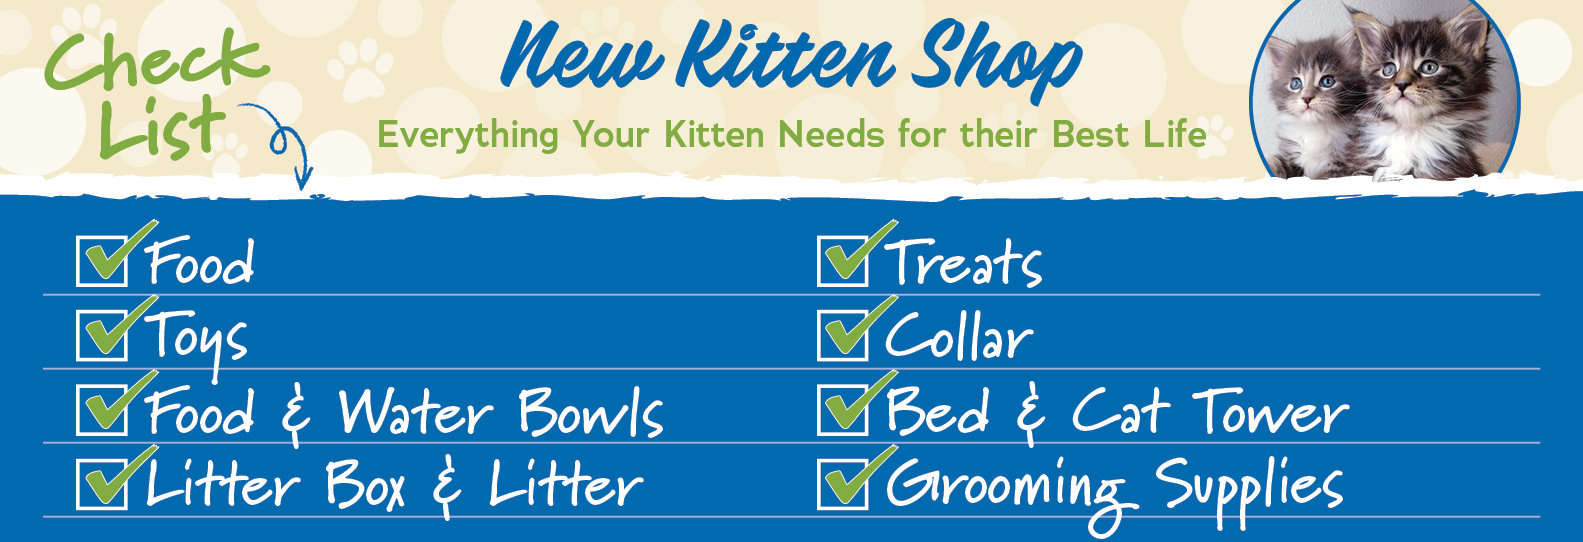 New Kitten Shop